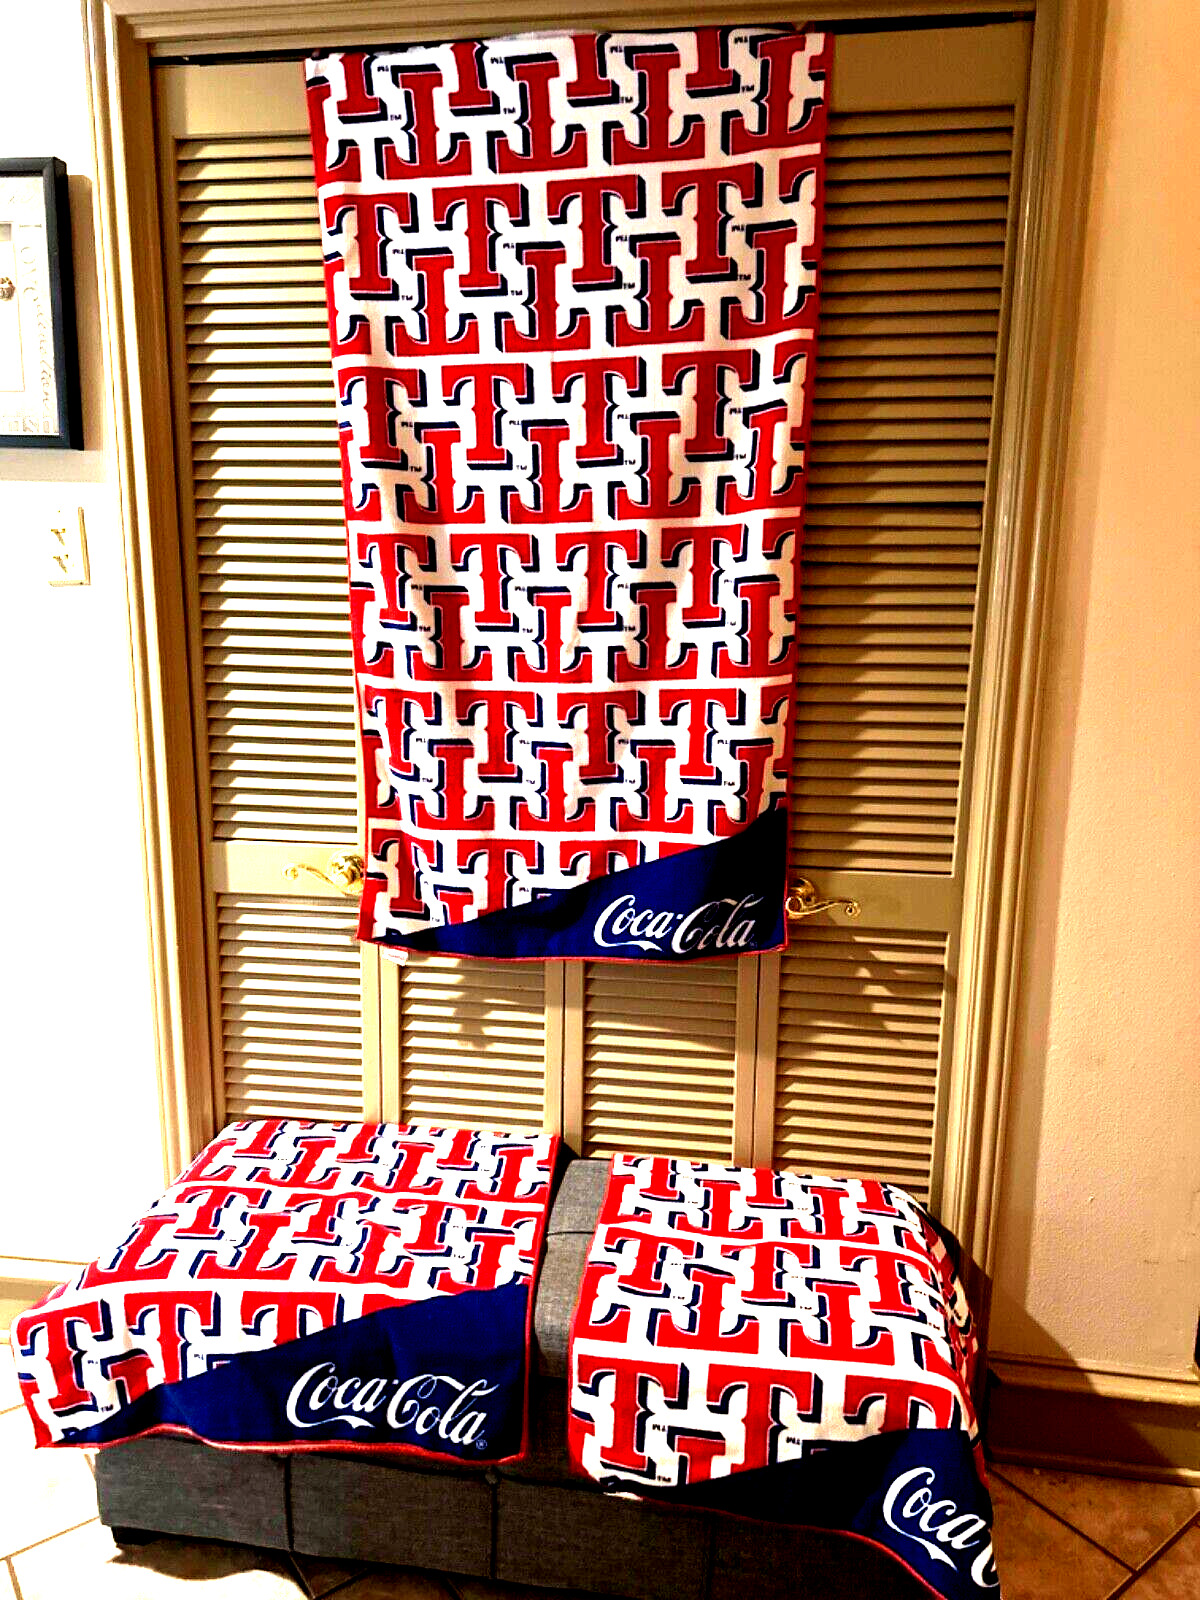 2 Coca-Cola Texas Rangers Kloanz Co. Red White & Blue 55 x 28 Beach Towels MLB -